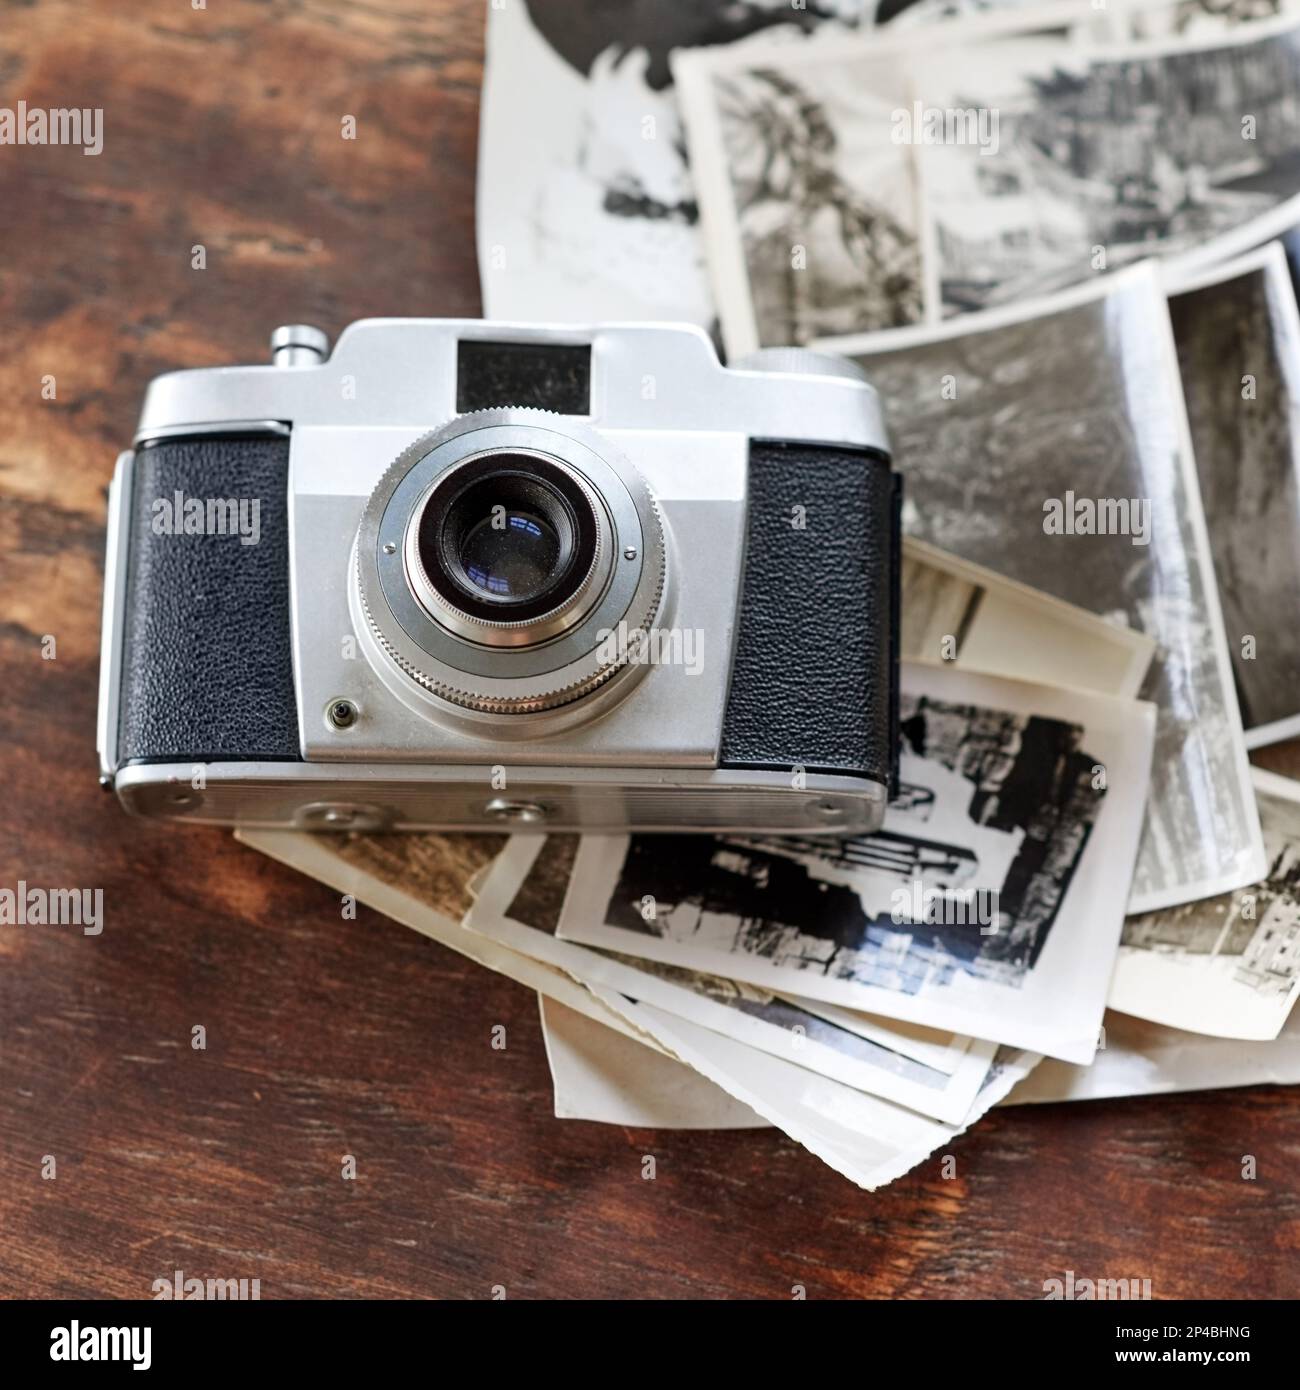 Bewahren Sie Ihre Erinnerungen. Eine altmodische Kamera, die auf einem Stapel Schwarz-Weiß-Fotos liegt. Stockfoto